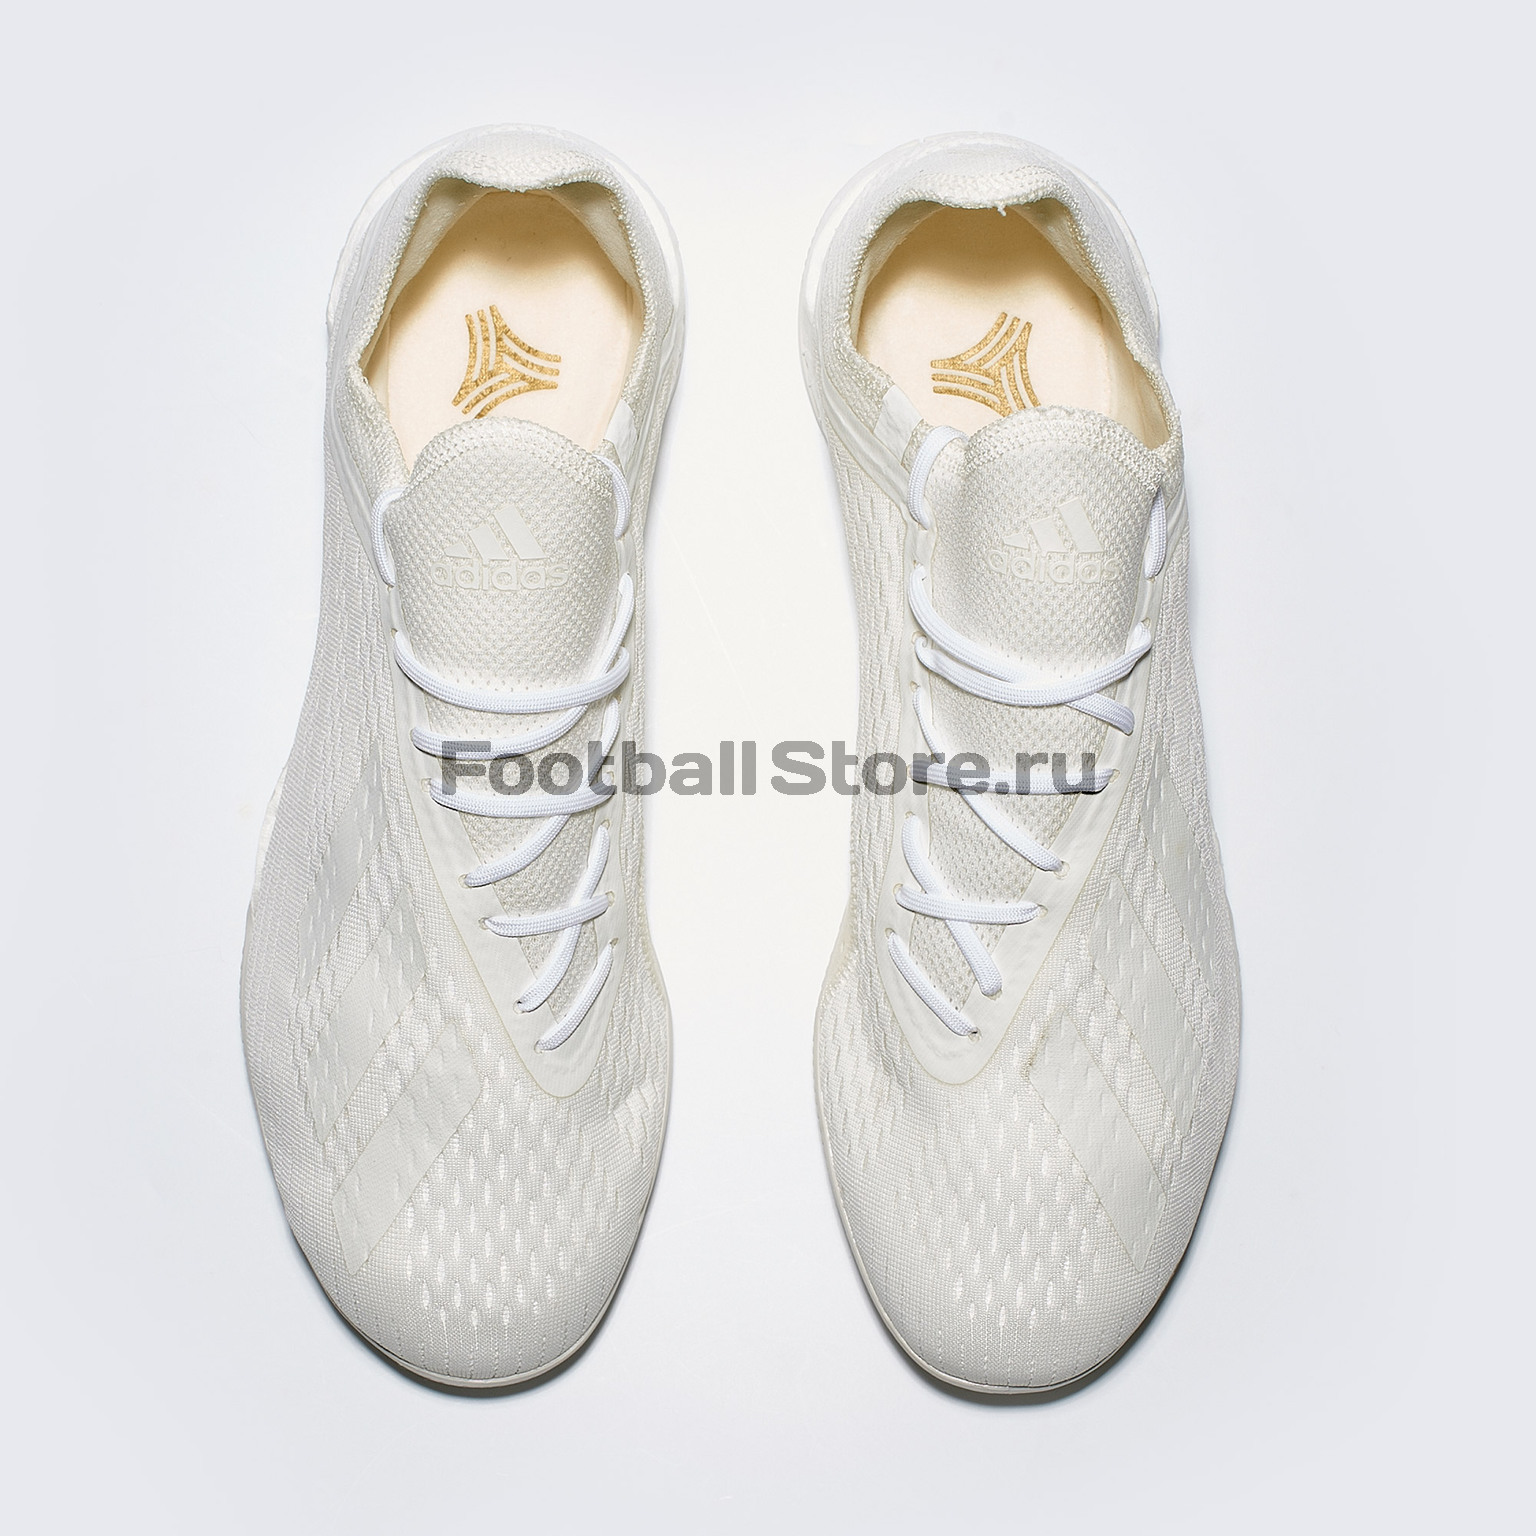 Футбольная обувь Adidas X Tango 18.1 TR DB2281